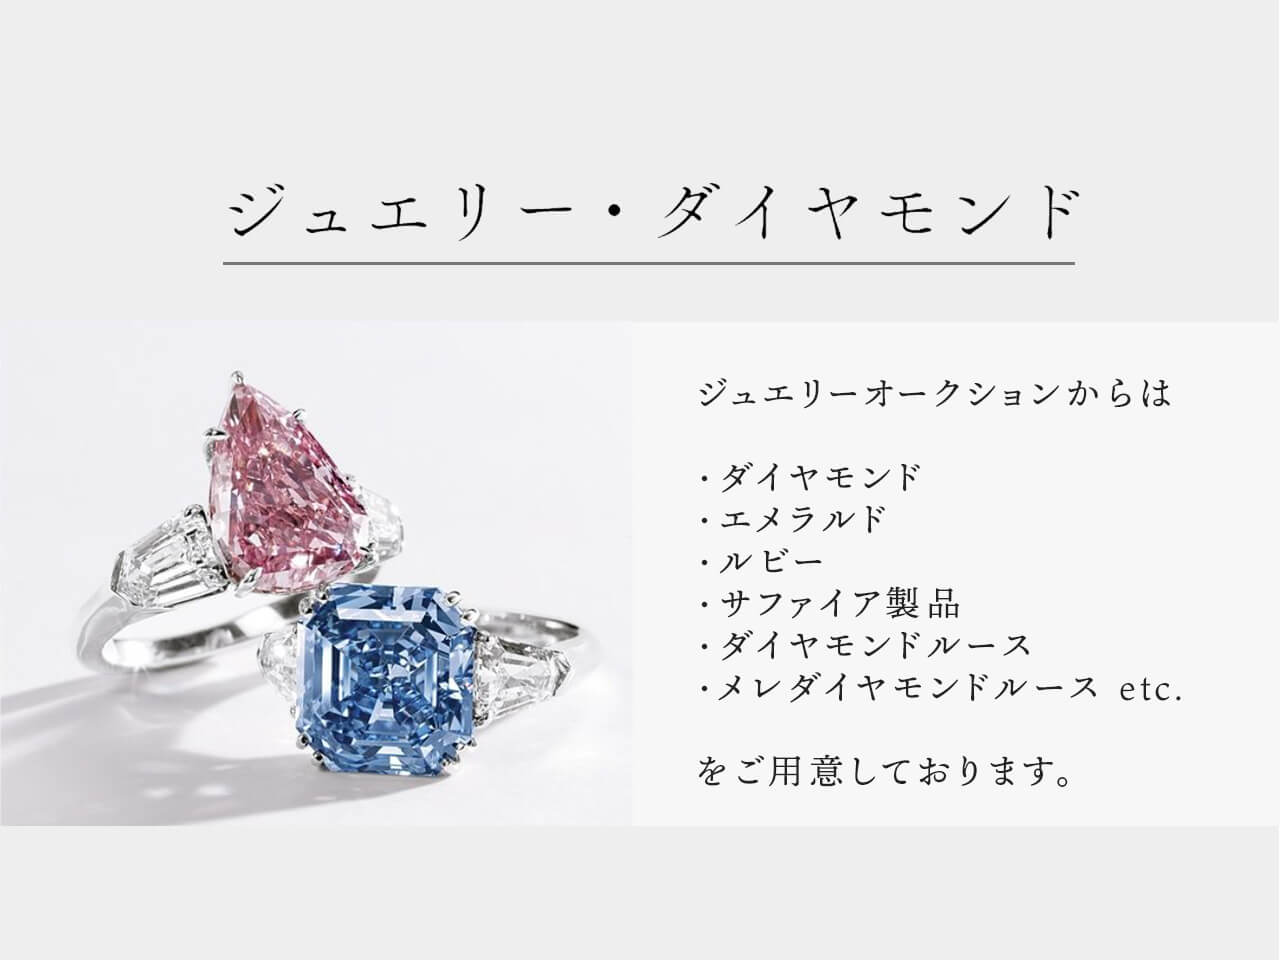 ジュエリー・ダイヤモンド ジュエリー部門からは・ダイヤモンド ・エメラルド ・ルビー ・サファイア製品 ・ダイヤモンドルース ・メレダイヤモンドルース etc. をご用意しております。